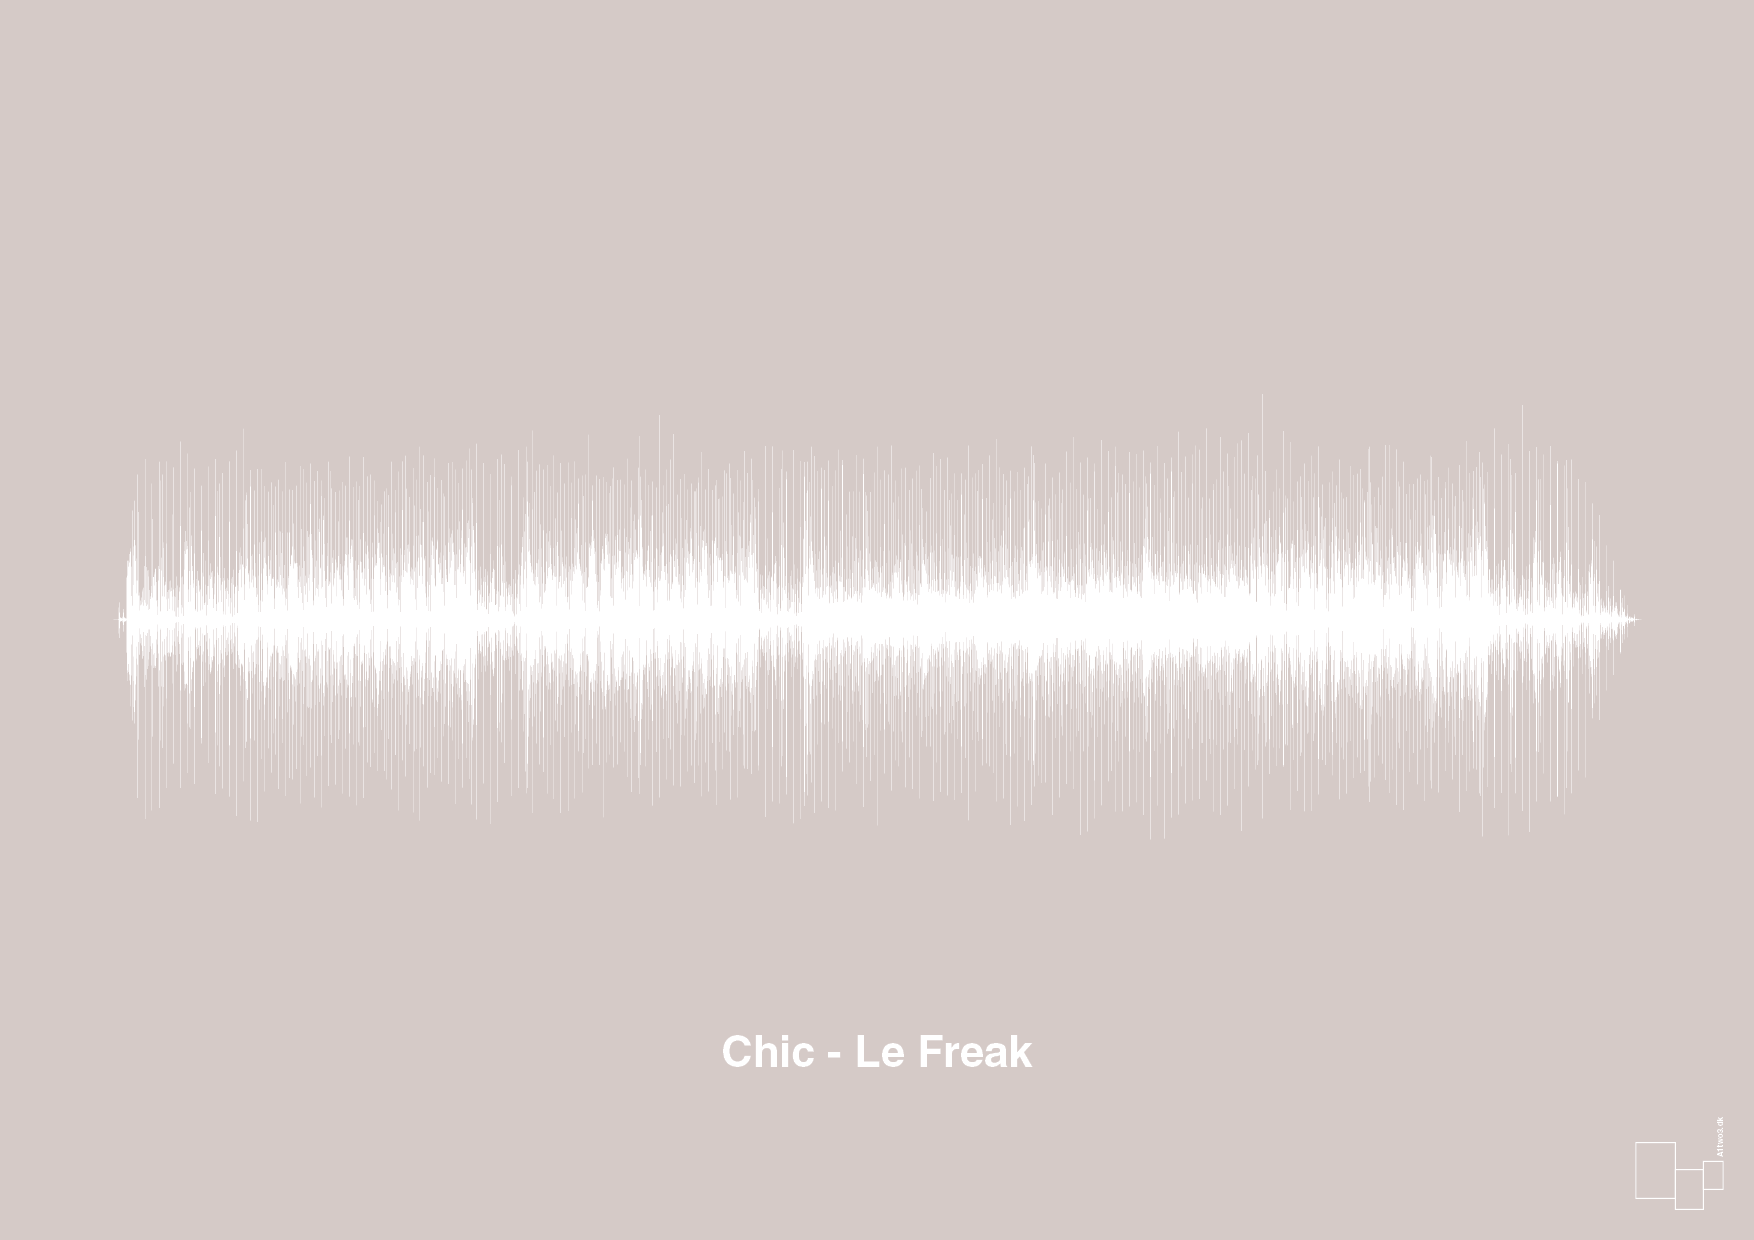 chic - le freak - Plakat med Musik i Broken Beige